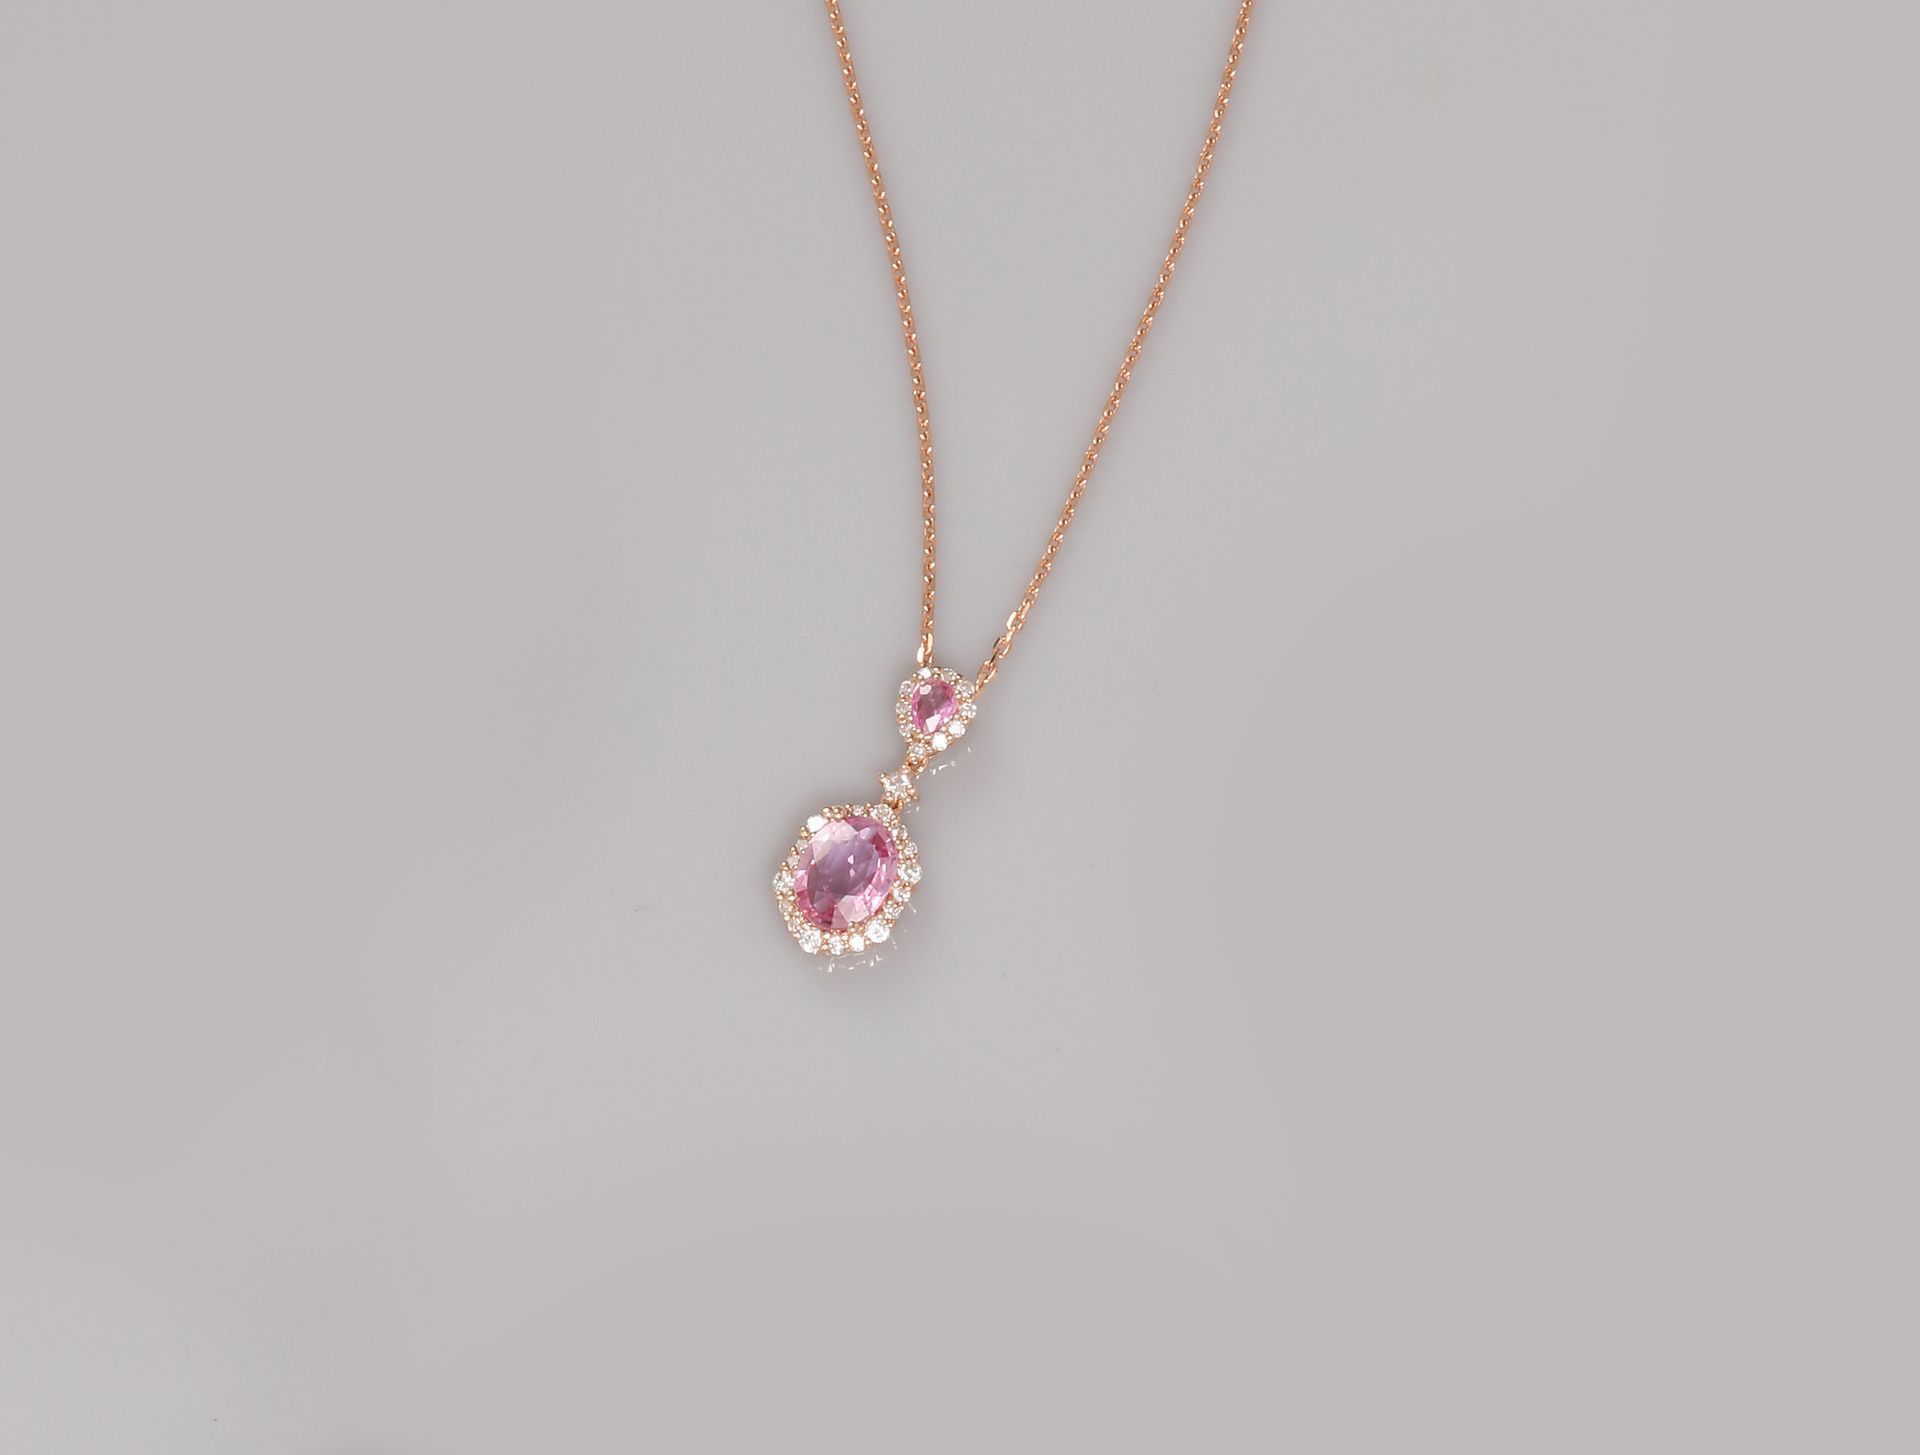 Null 粉红金项链，750毫米，以粉红蓝宝石为中心的两个图案，以钻石为边，穿插着钻石，弹簧环，长42厘米，重量：3.95克，毛重。